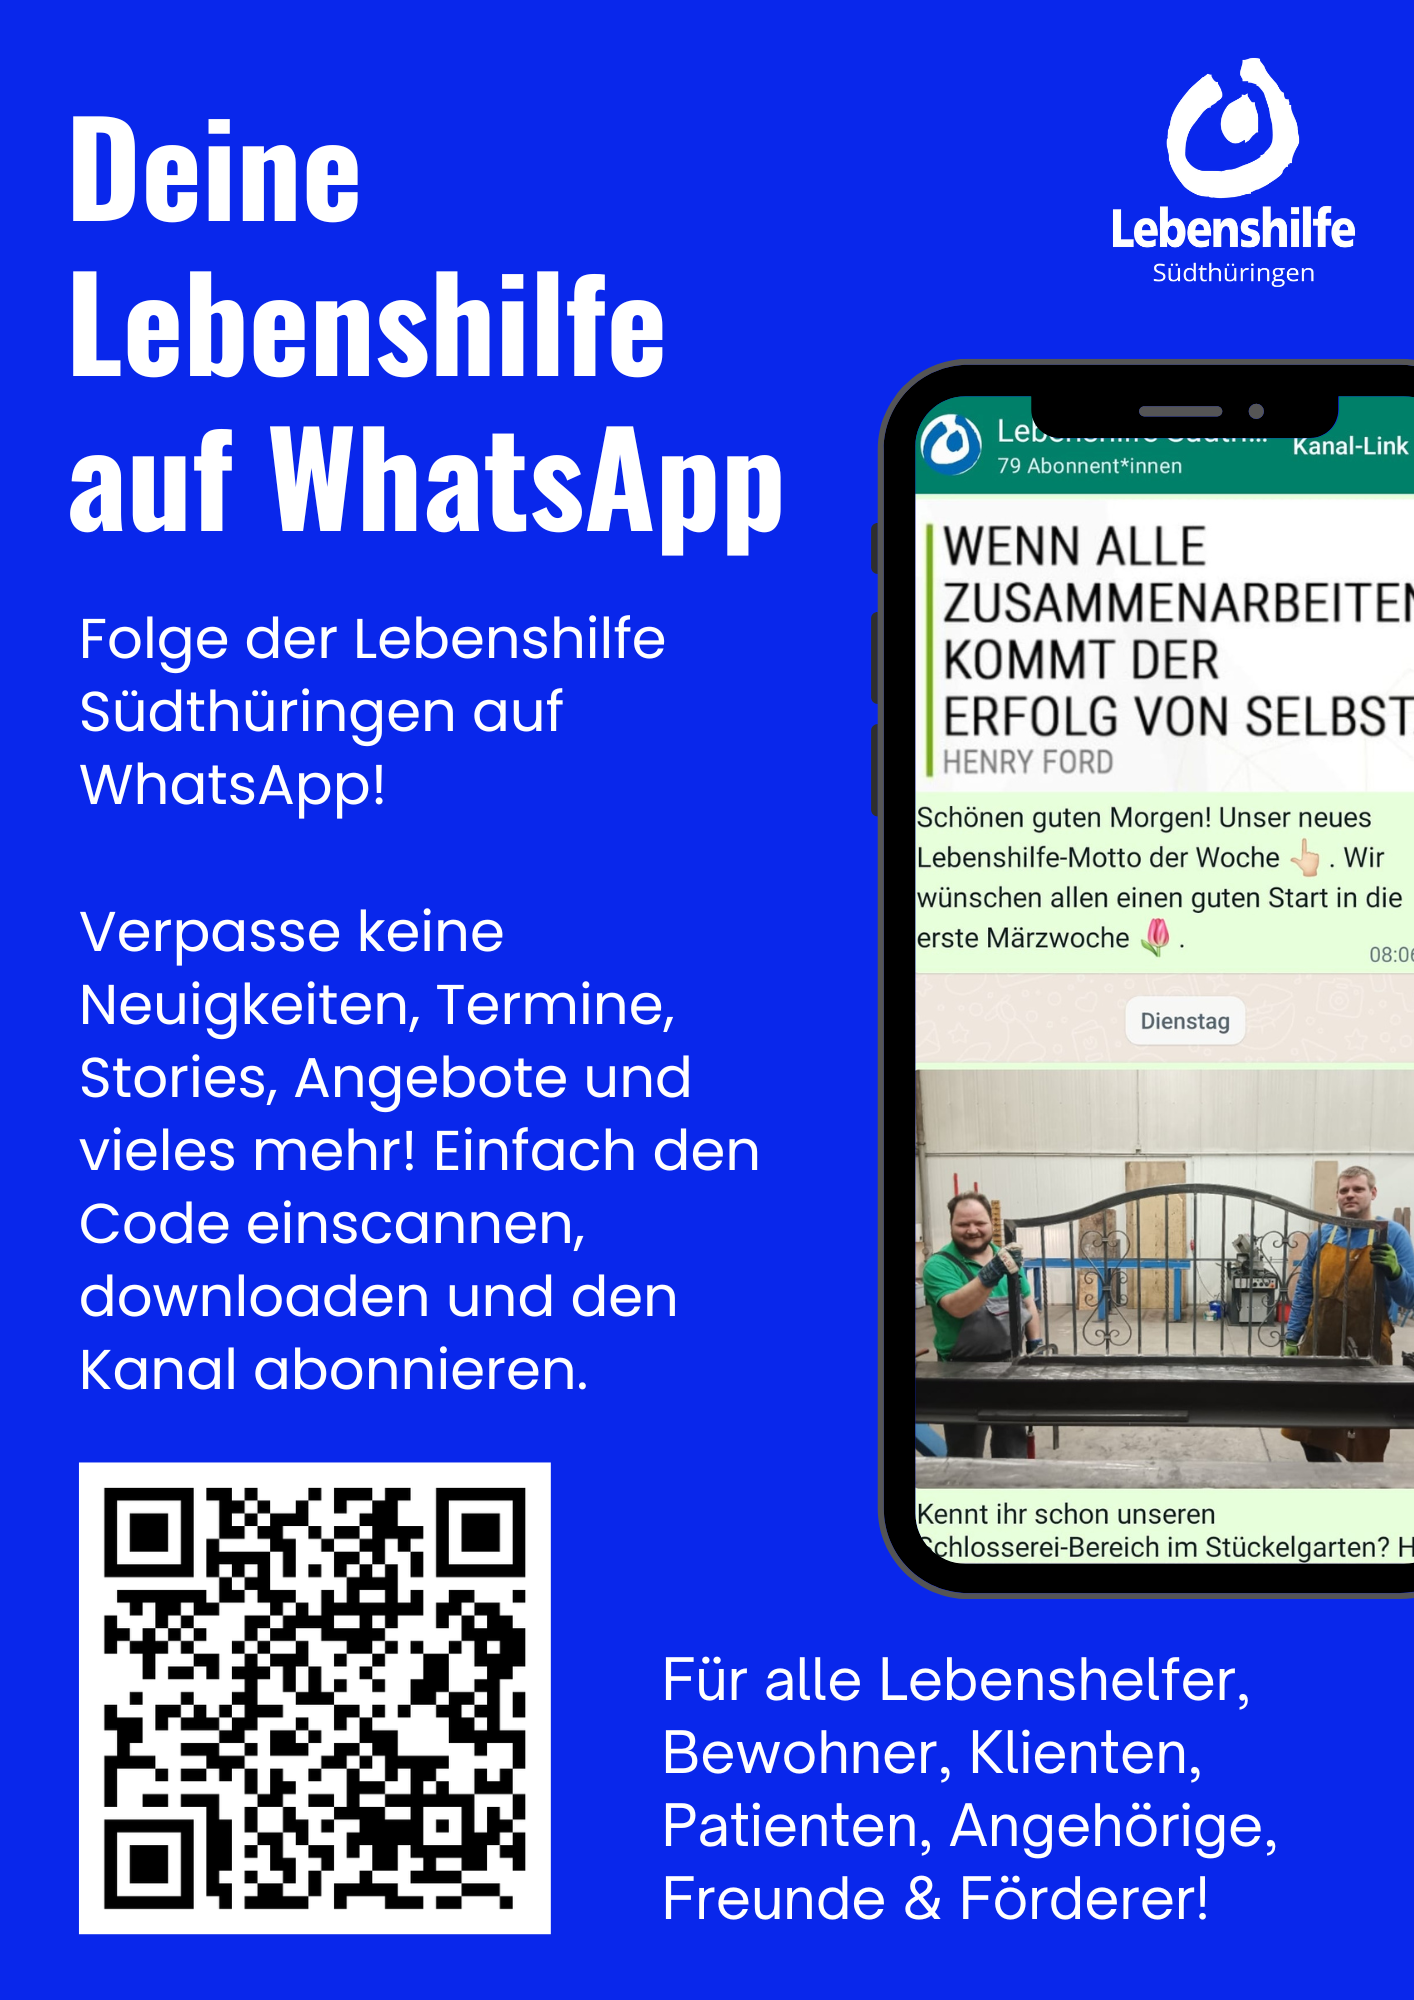 Featured image for “Deine Lebenshilfe auf WhatsApp”